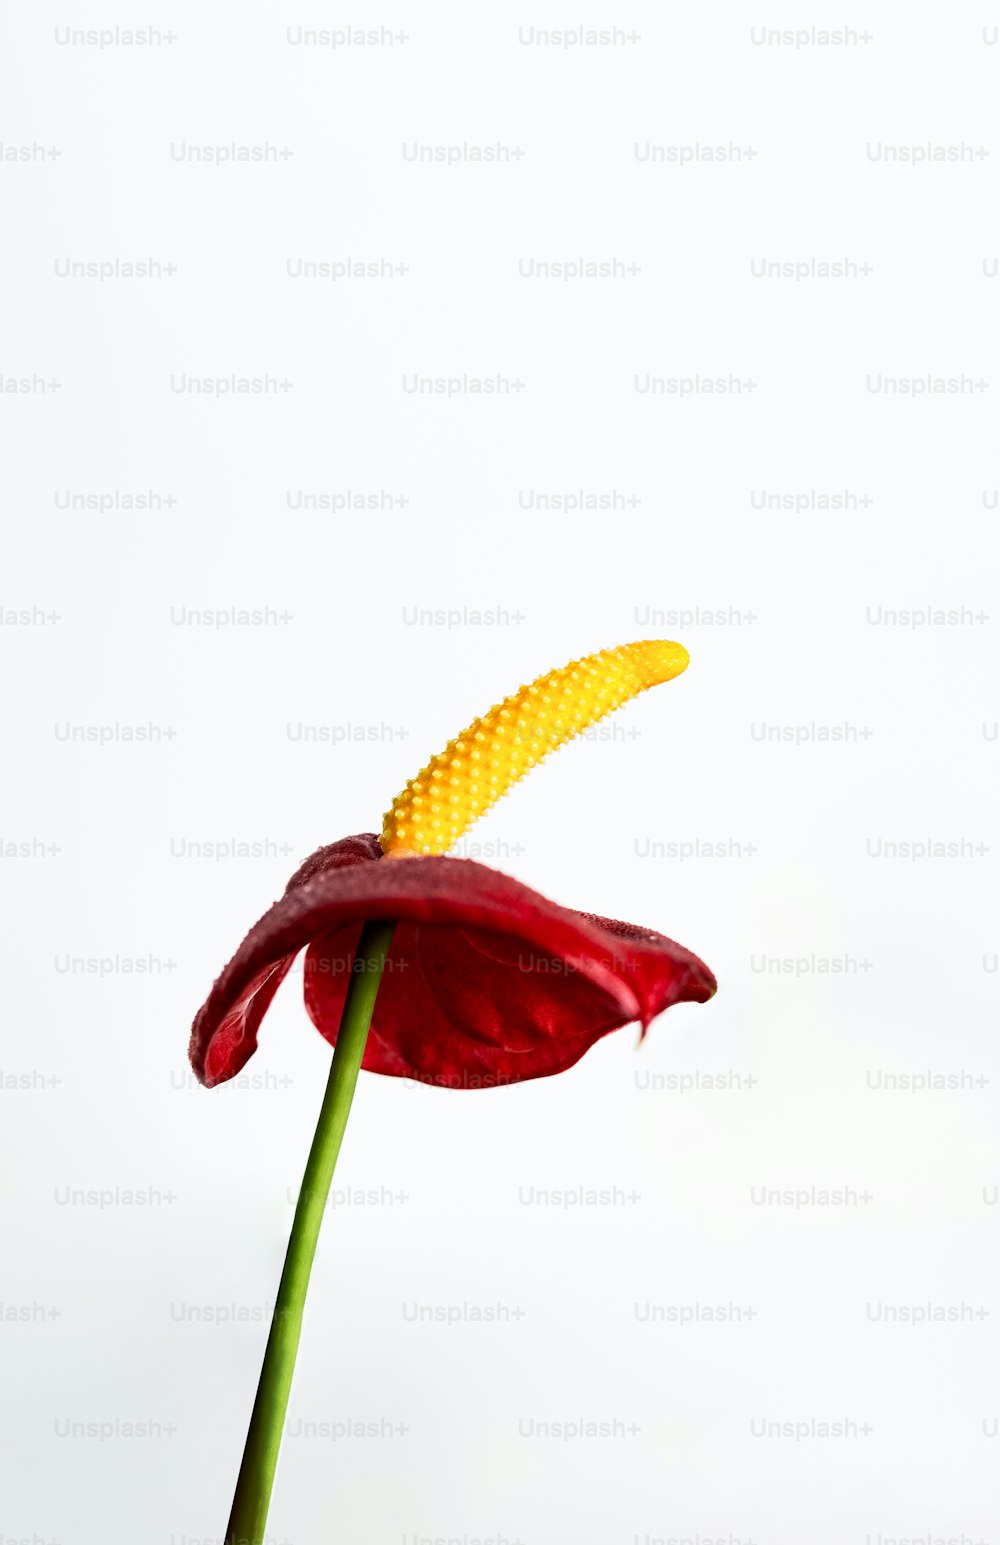 uma única flor vermelha com um caule amarelo